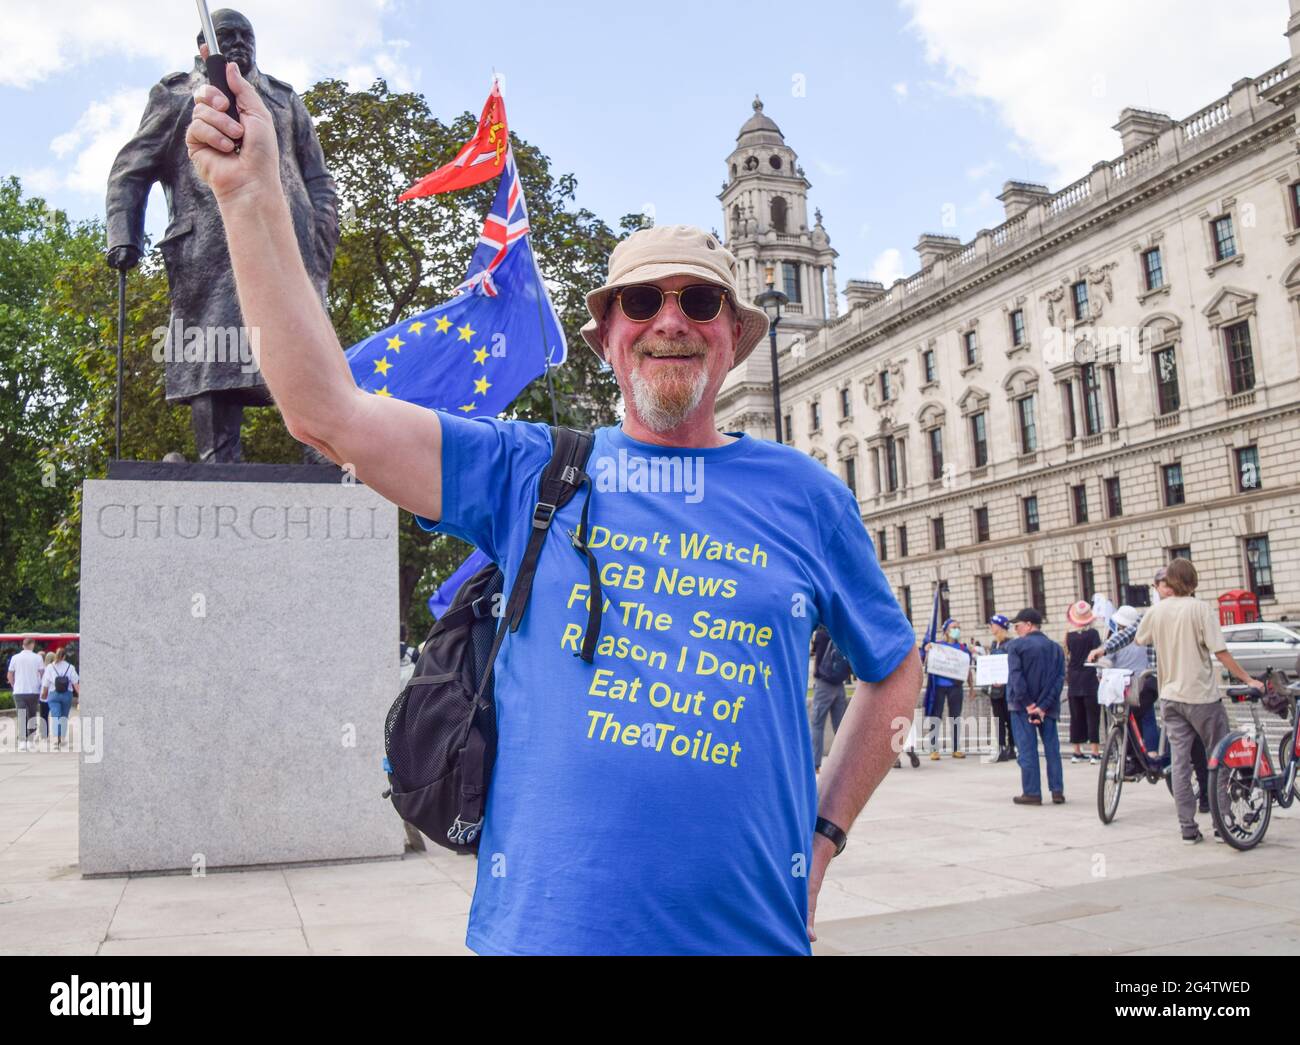 Londres, Reino Unido. 23rd de junio de 2021. Un demostrador lleva una camiseta anti-GB News. Manifestantes anti-Brexit se reunieron frente a las Cámaras del Parlamento en el quinto aniversario del referéndum. (Crédito: Vuk Valcic / Alamy Live News) Foto de stock